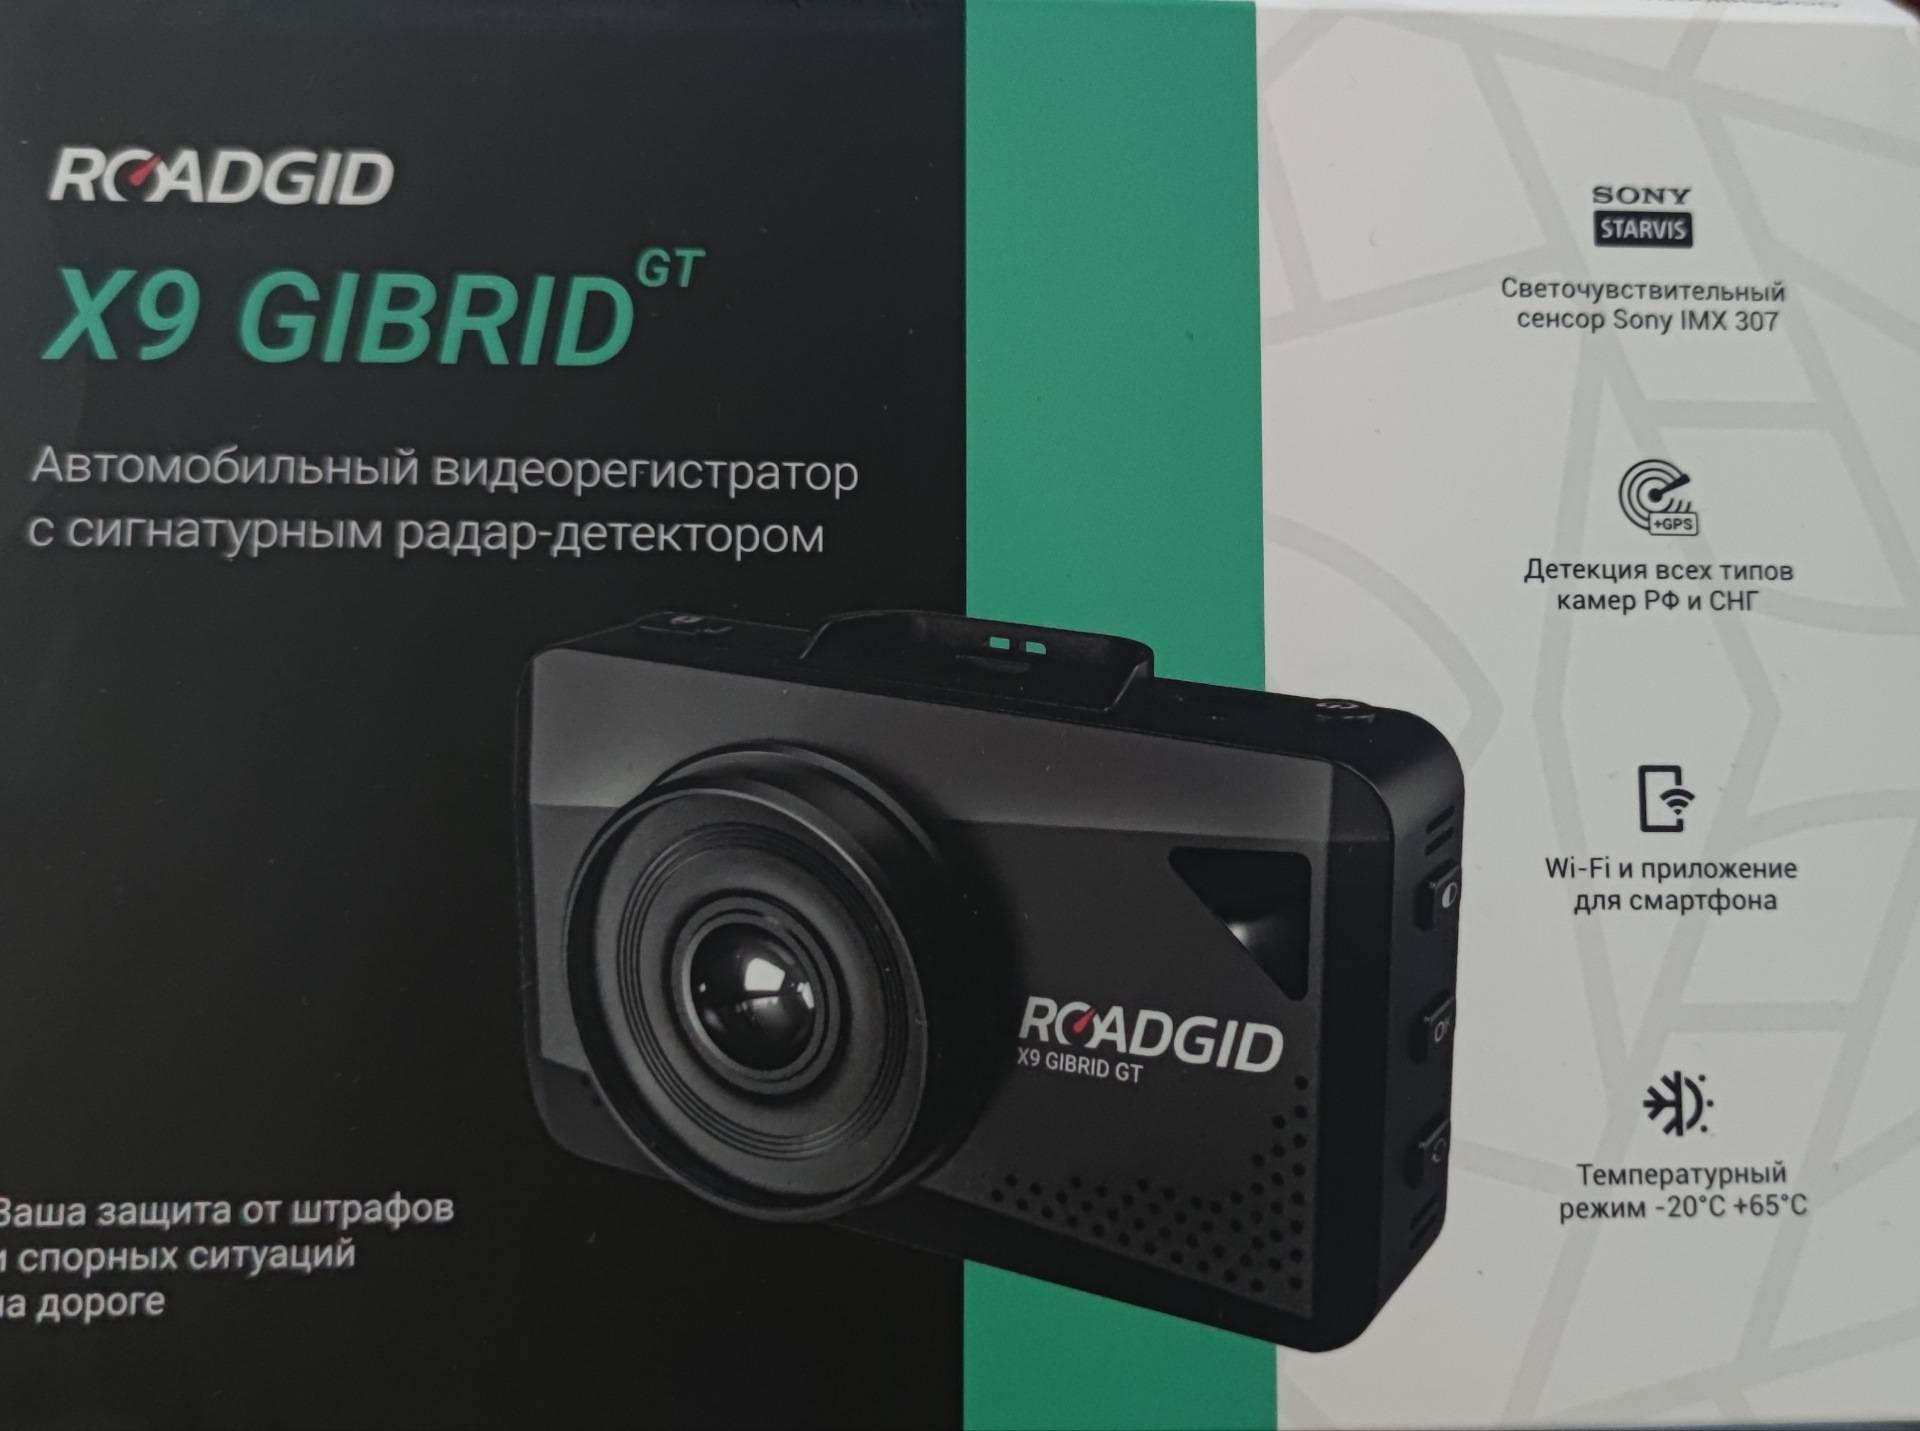 Roadgid x8 gibrid gt отзывы - видеорегистраторы - первый независимый сайт отзывов россии